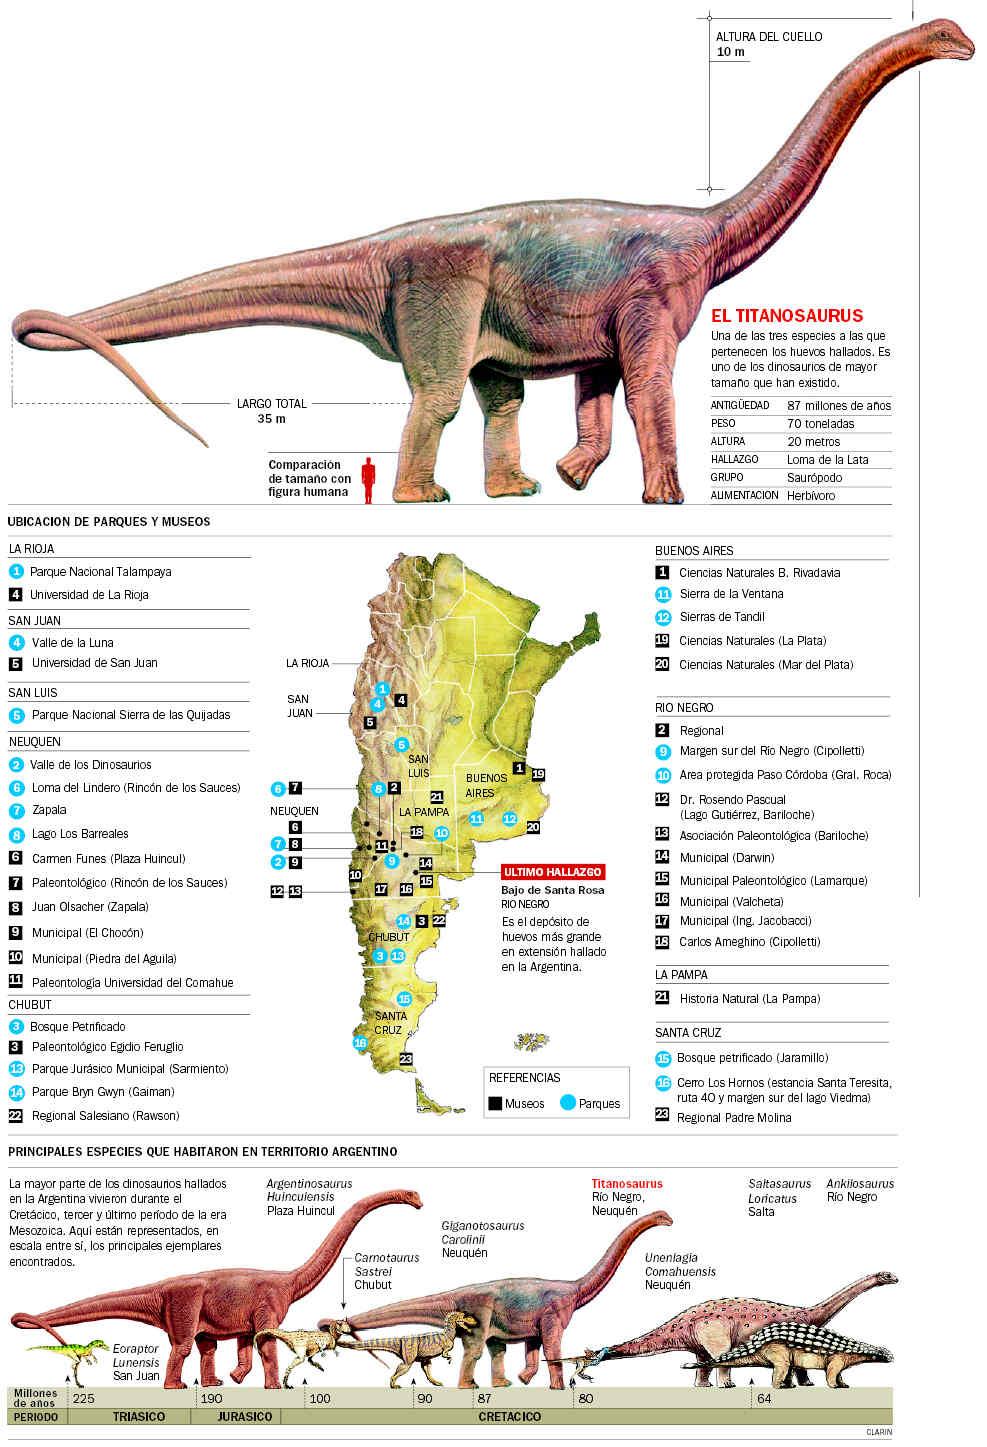 Argentina prehistórica, la tierra prometida de científicos, paleontólogos y amantes de los grandes saurios.